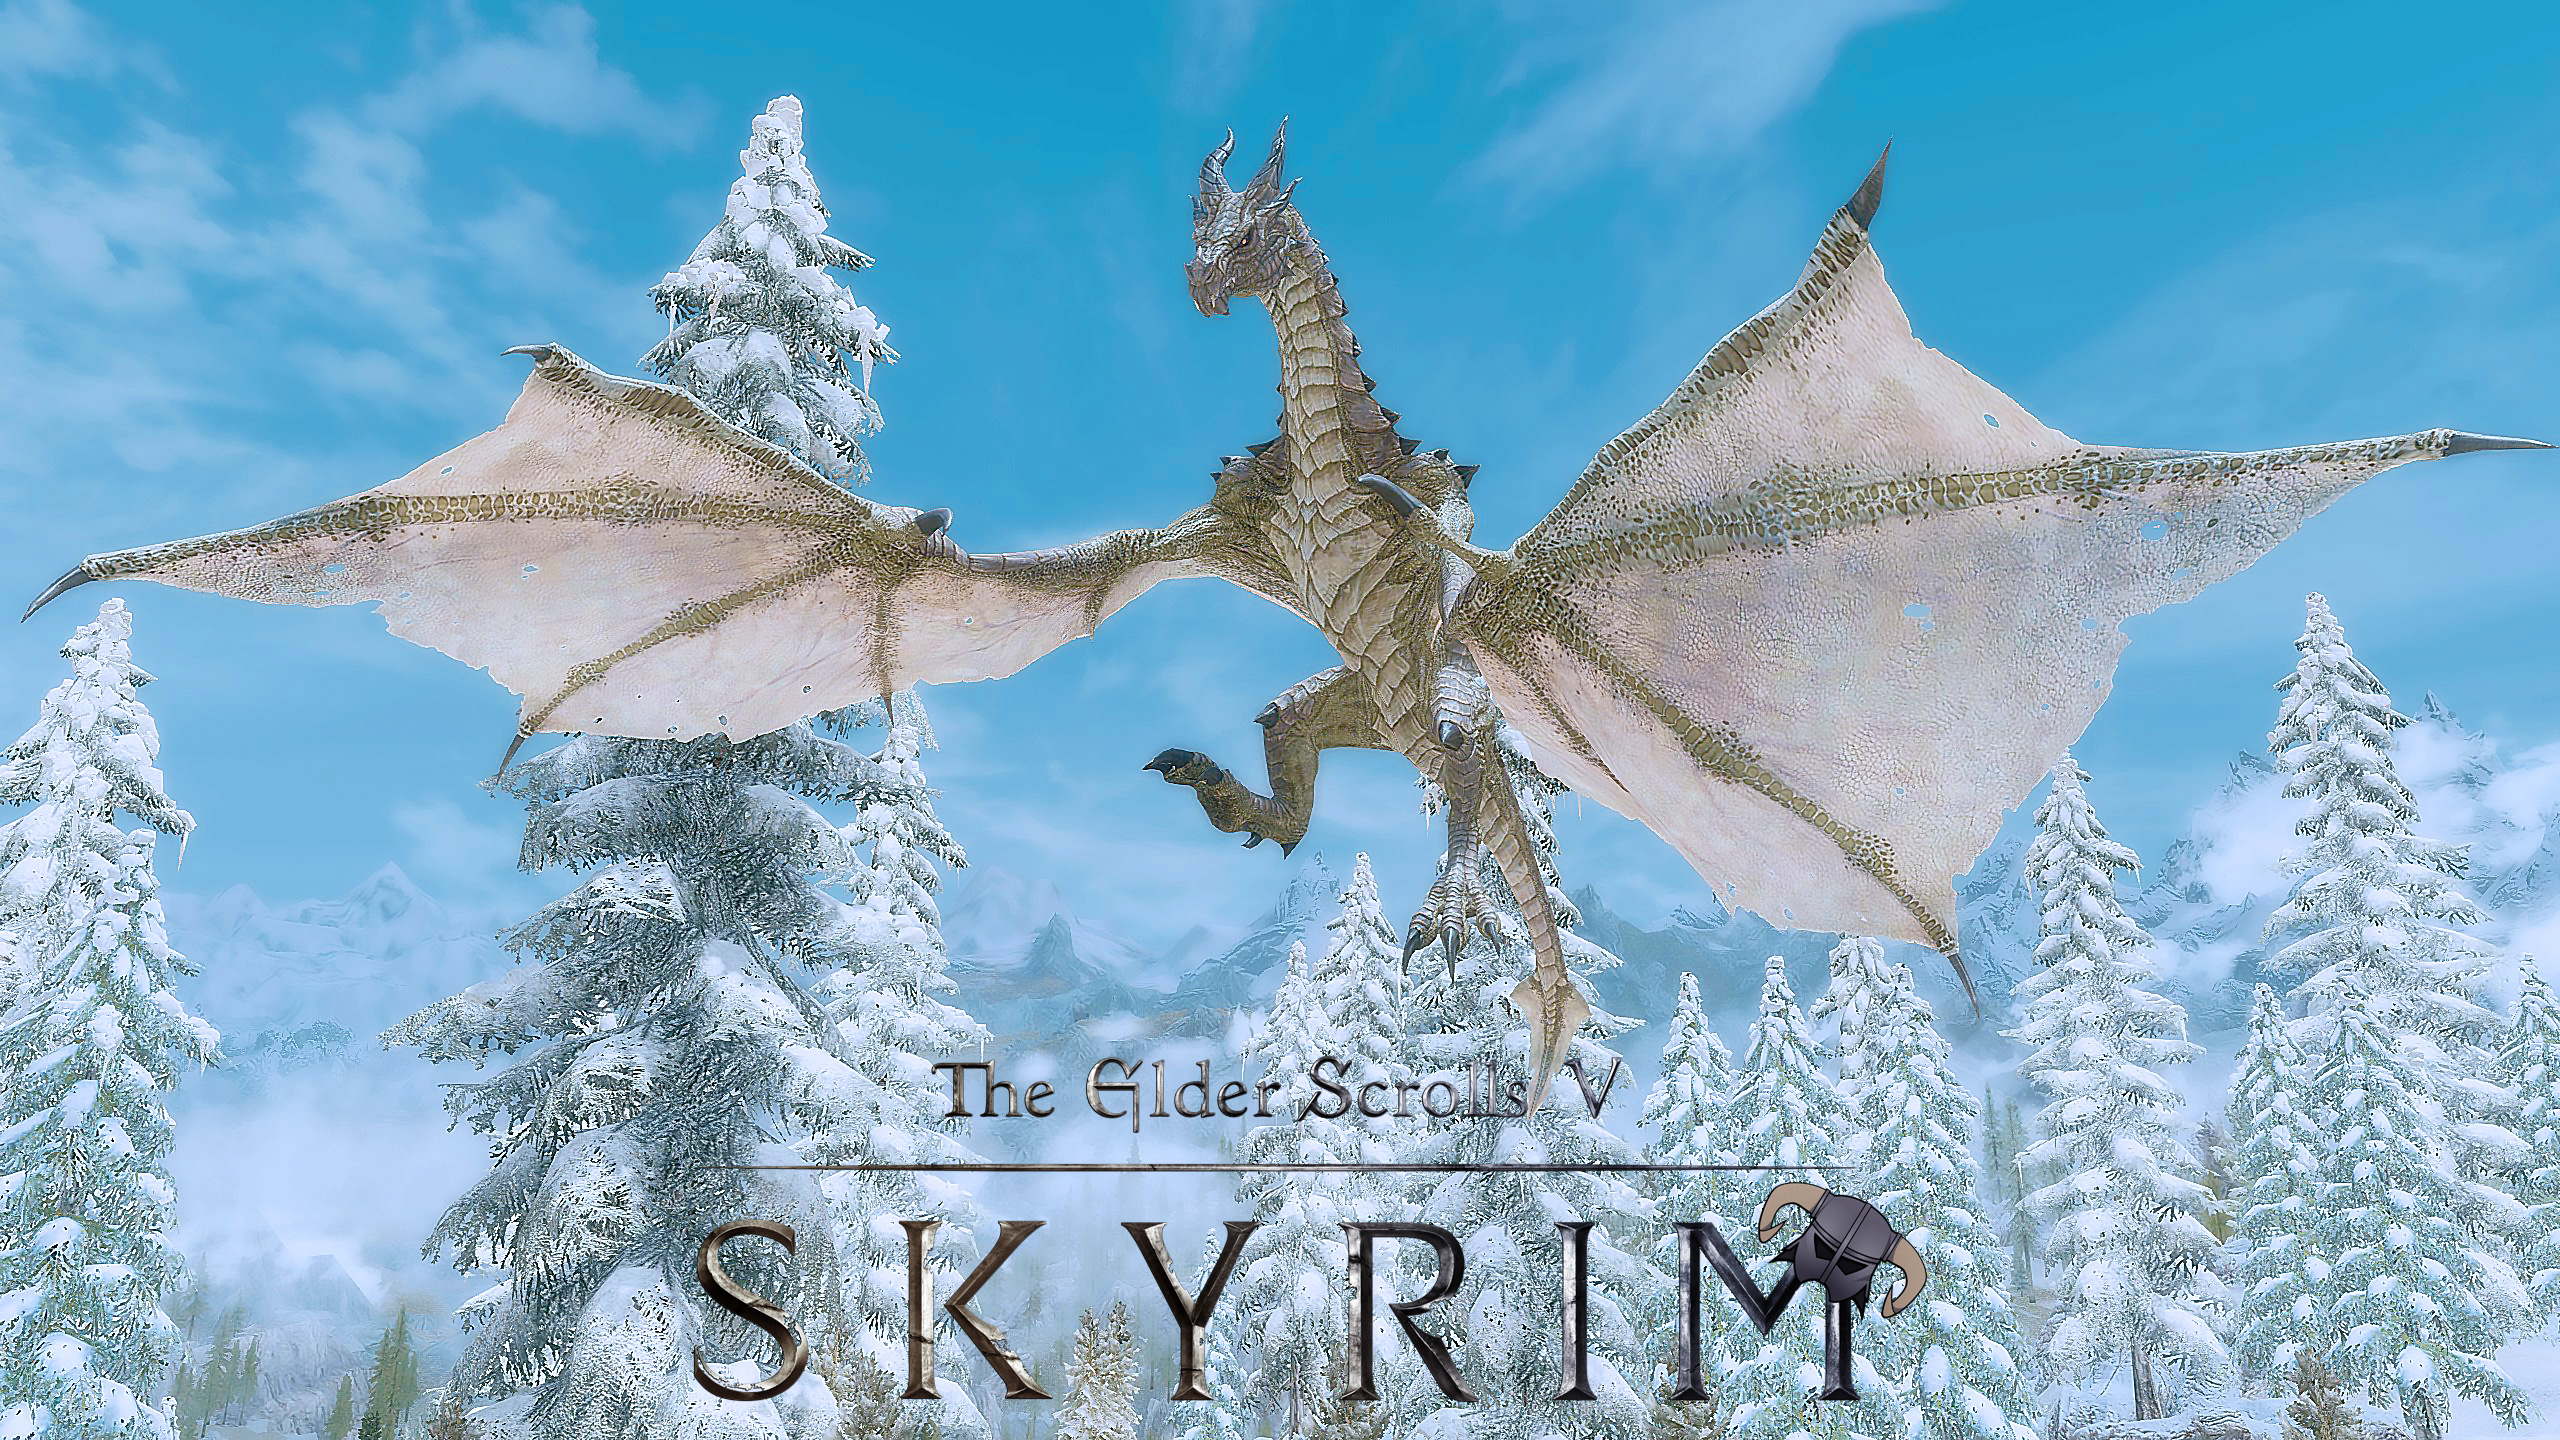 Download mobile wallpaper The Elder Scrolls V: Skyrim, Skyrim, The Elder Scrolls, Dragon, Video Game for free.